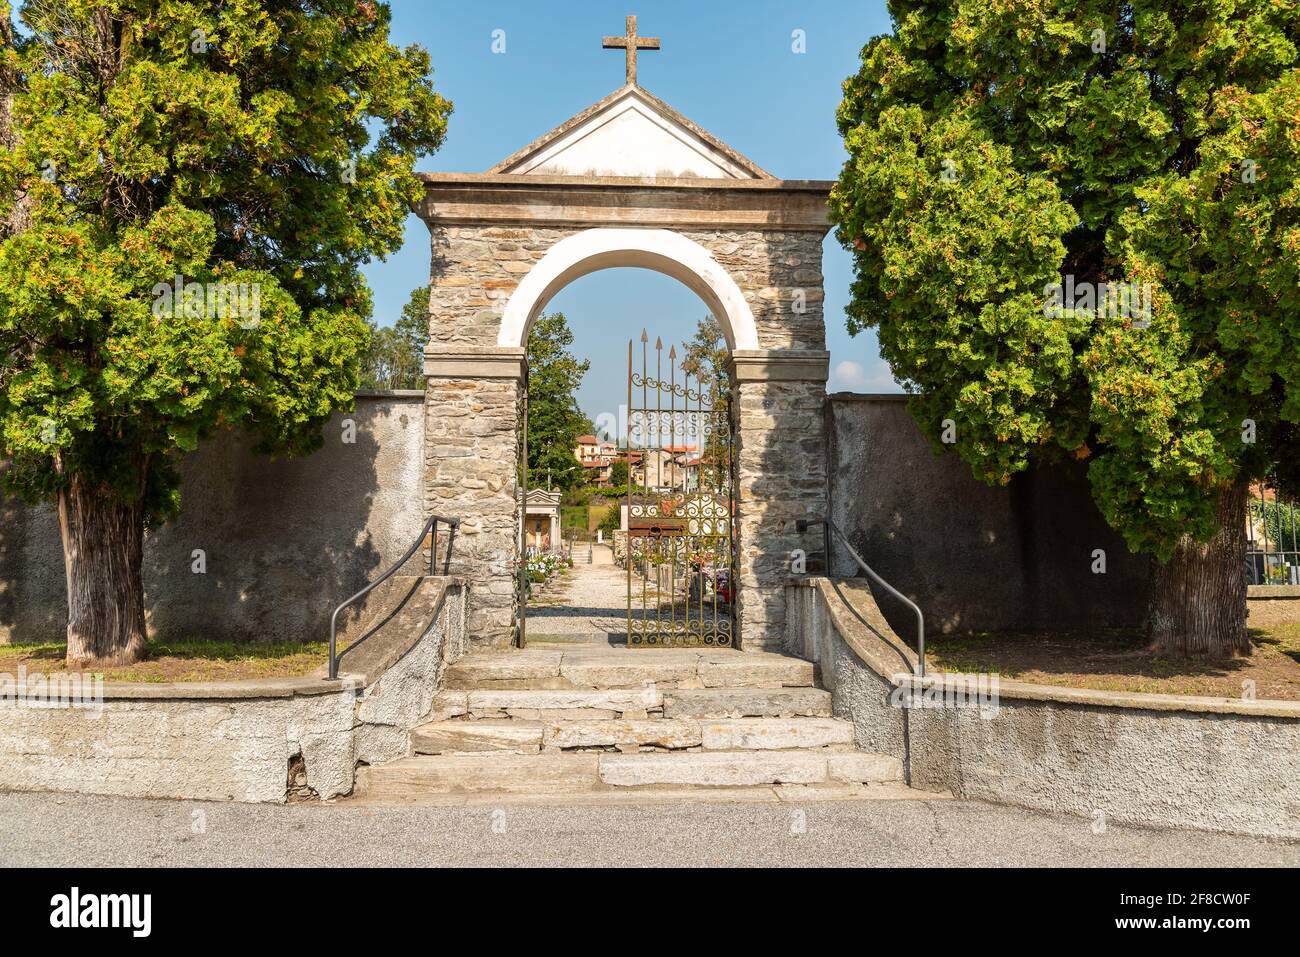 Eintritt zum Friedhof von Dumenza, Provinz Varese, Italien Stockfoto